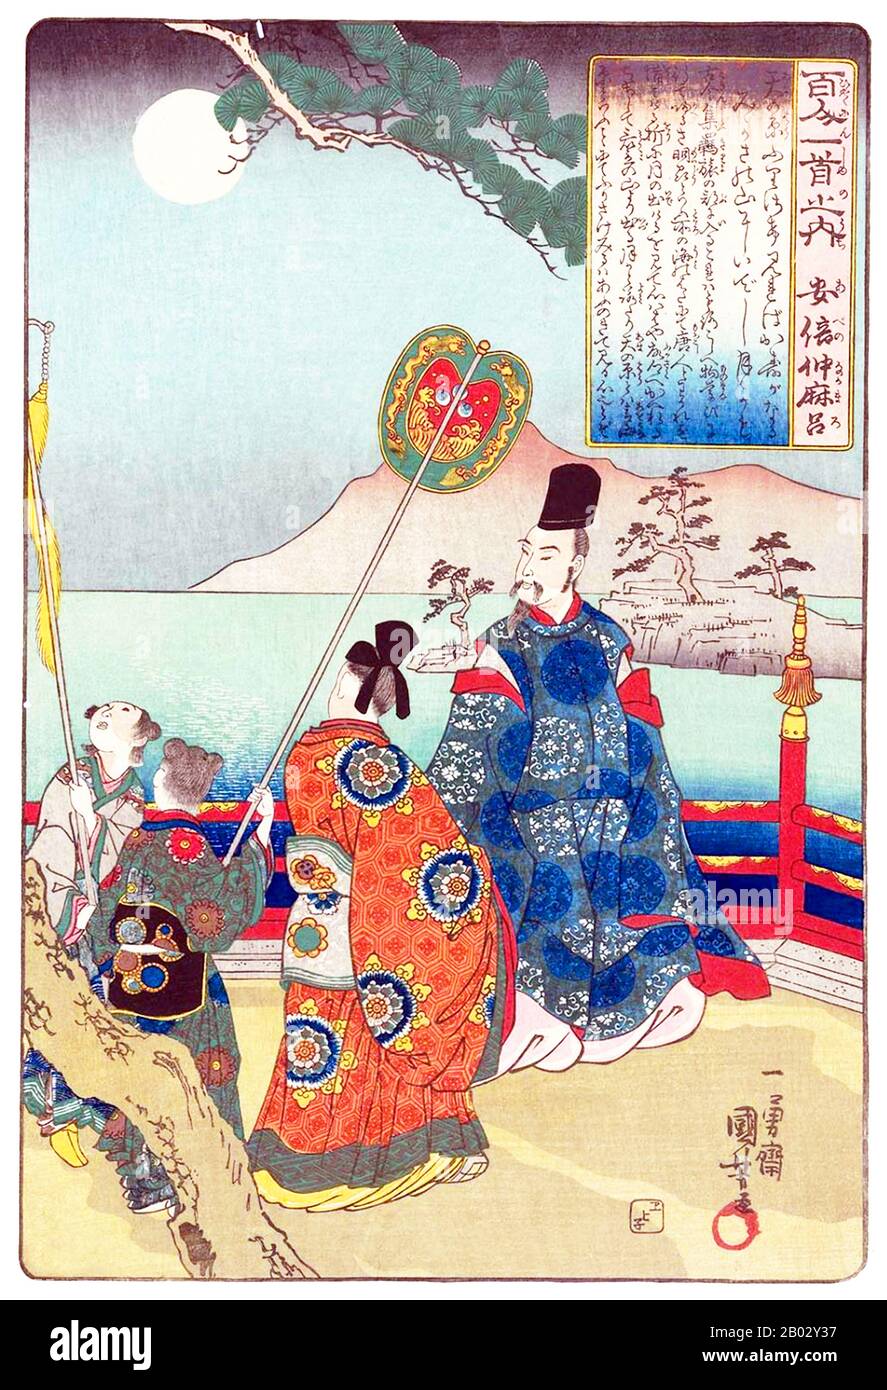 Nel 717-718, Abe no Nakamoro faceva parte della missione giapponese a Tang China (Kentoshi) insieme a Kibi no Makibi e Genbo. Tornarono in Giappone; non lo fece. In Cina, ha superato l’esame della funzione pubblica. Intorno al 725, ha assunto una posizione amministrativa ed è stato promosso a Luoyang nel 728 e nel 731. Intorno al 733 ricevette Tajihi Hironari, che comandava la missione diplomatica giapponese. Nel 734 cercò di tornare in Giappone, ma la nave per riportarlo affondò non molto tempo nel viaggio, costringendolo a rimanere in Cina per diversi anni. Nel 752 cercò di tornare, con la missione a C. Foto Stock